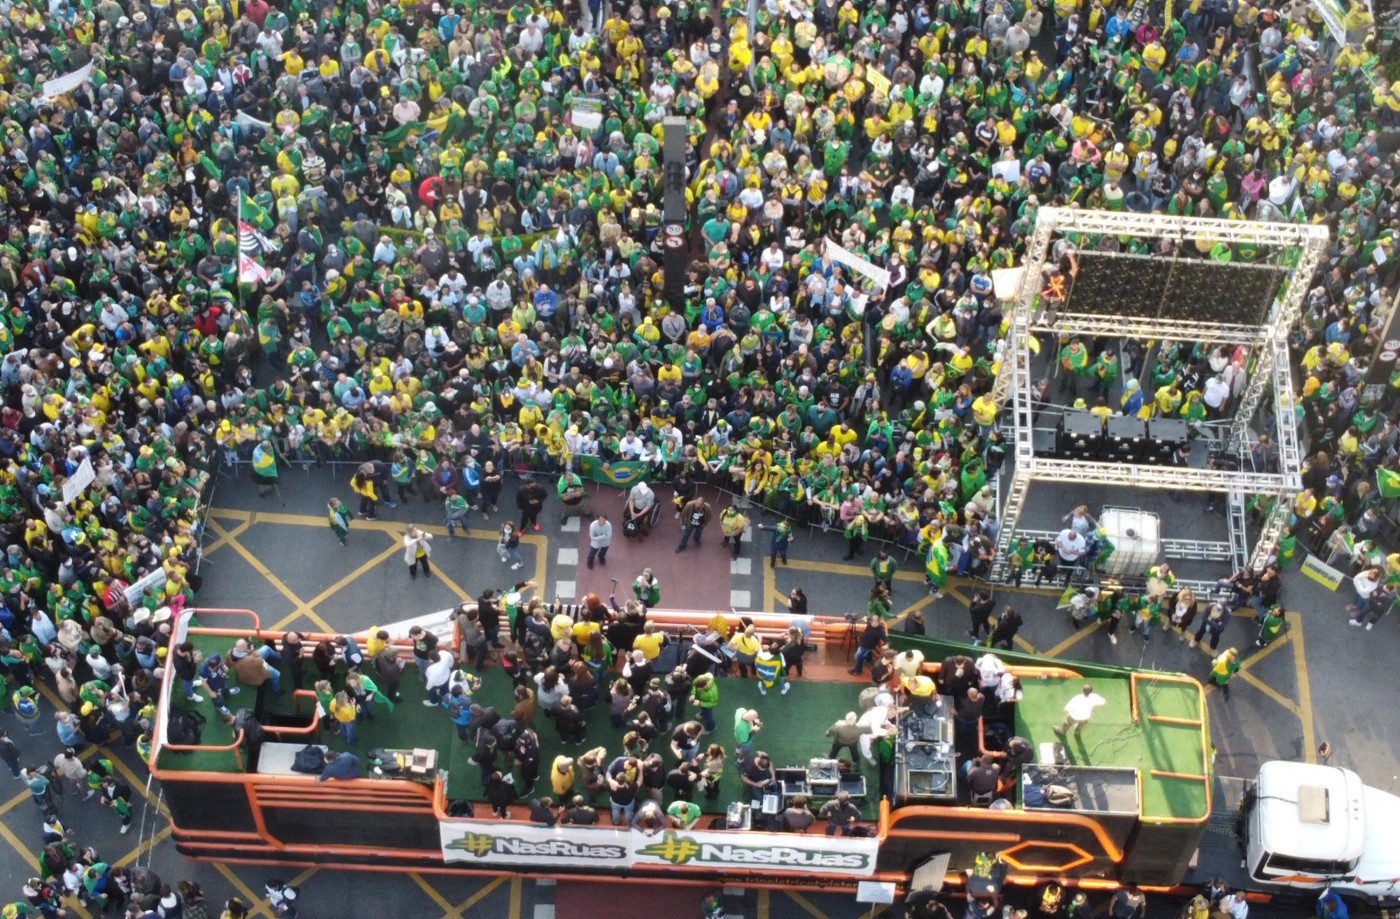 Foto tirada de cima com vários apoiadores em manifestação pró-bolsonaro